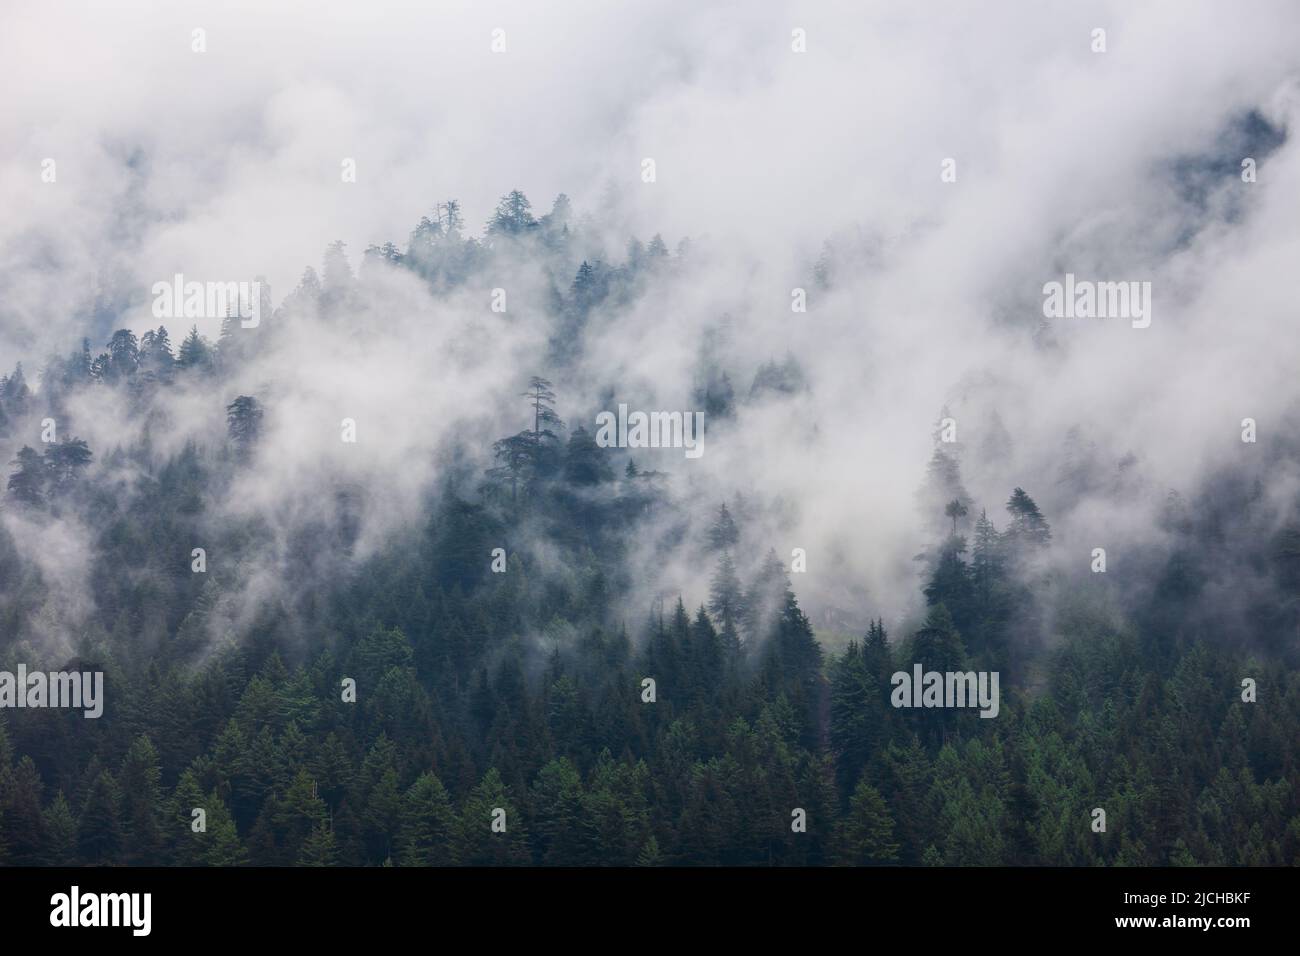 Vista panorámica del paisaje de la ladera boscosa de la montaña en nubes con las coníferas perennes en niebla Foto de stock